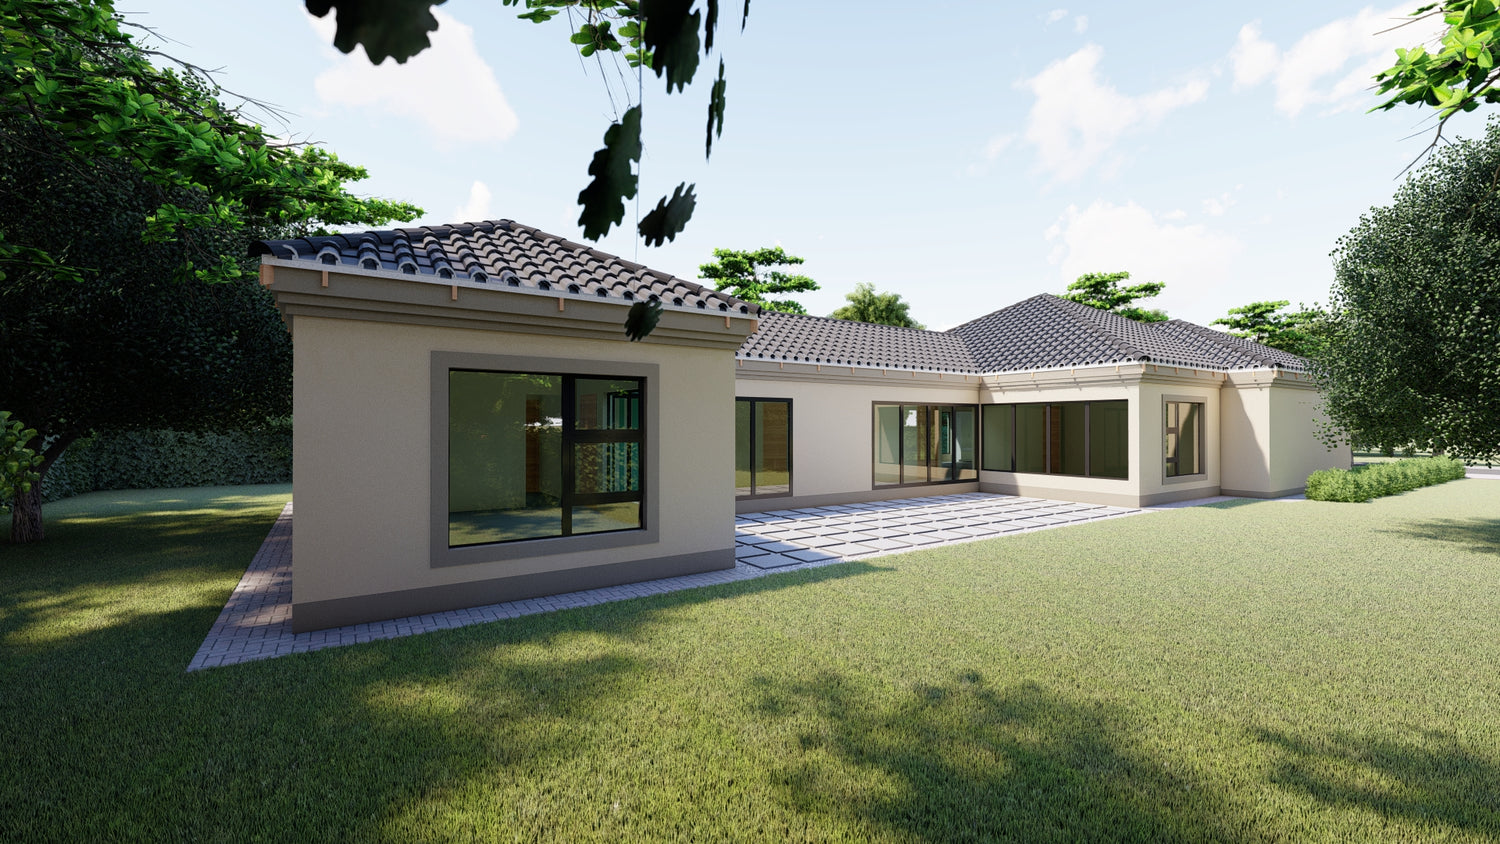 Bali House Plans